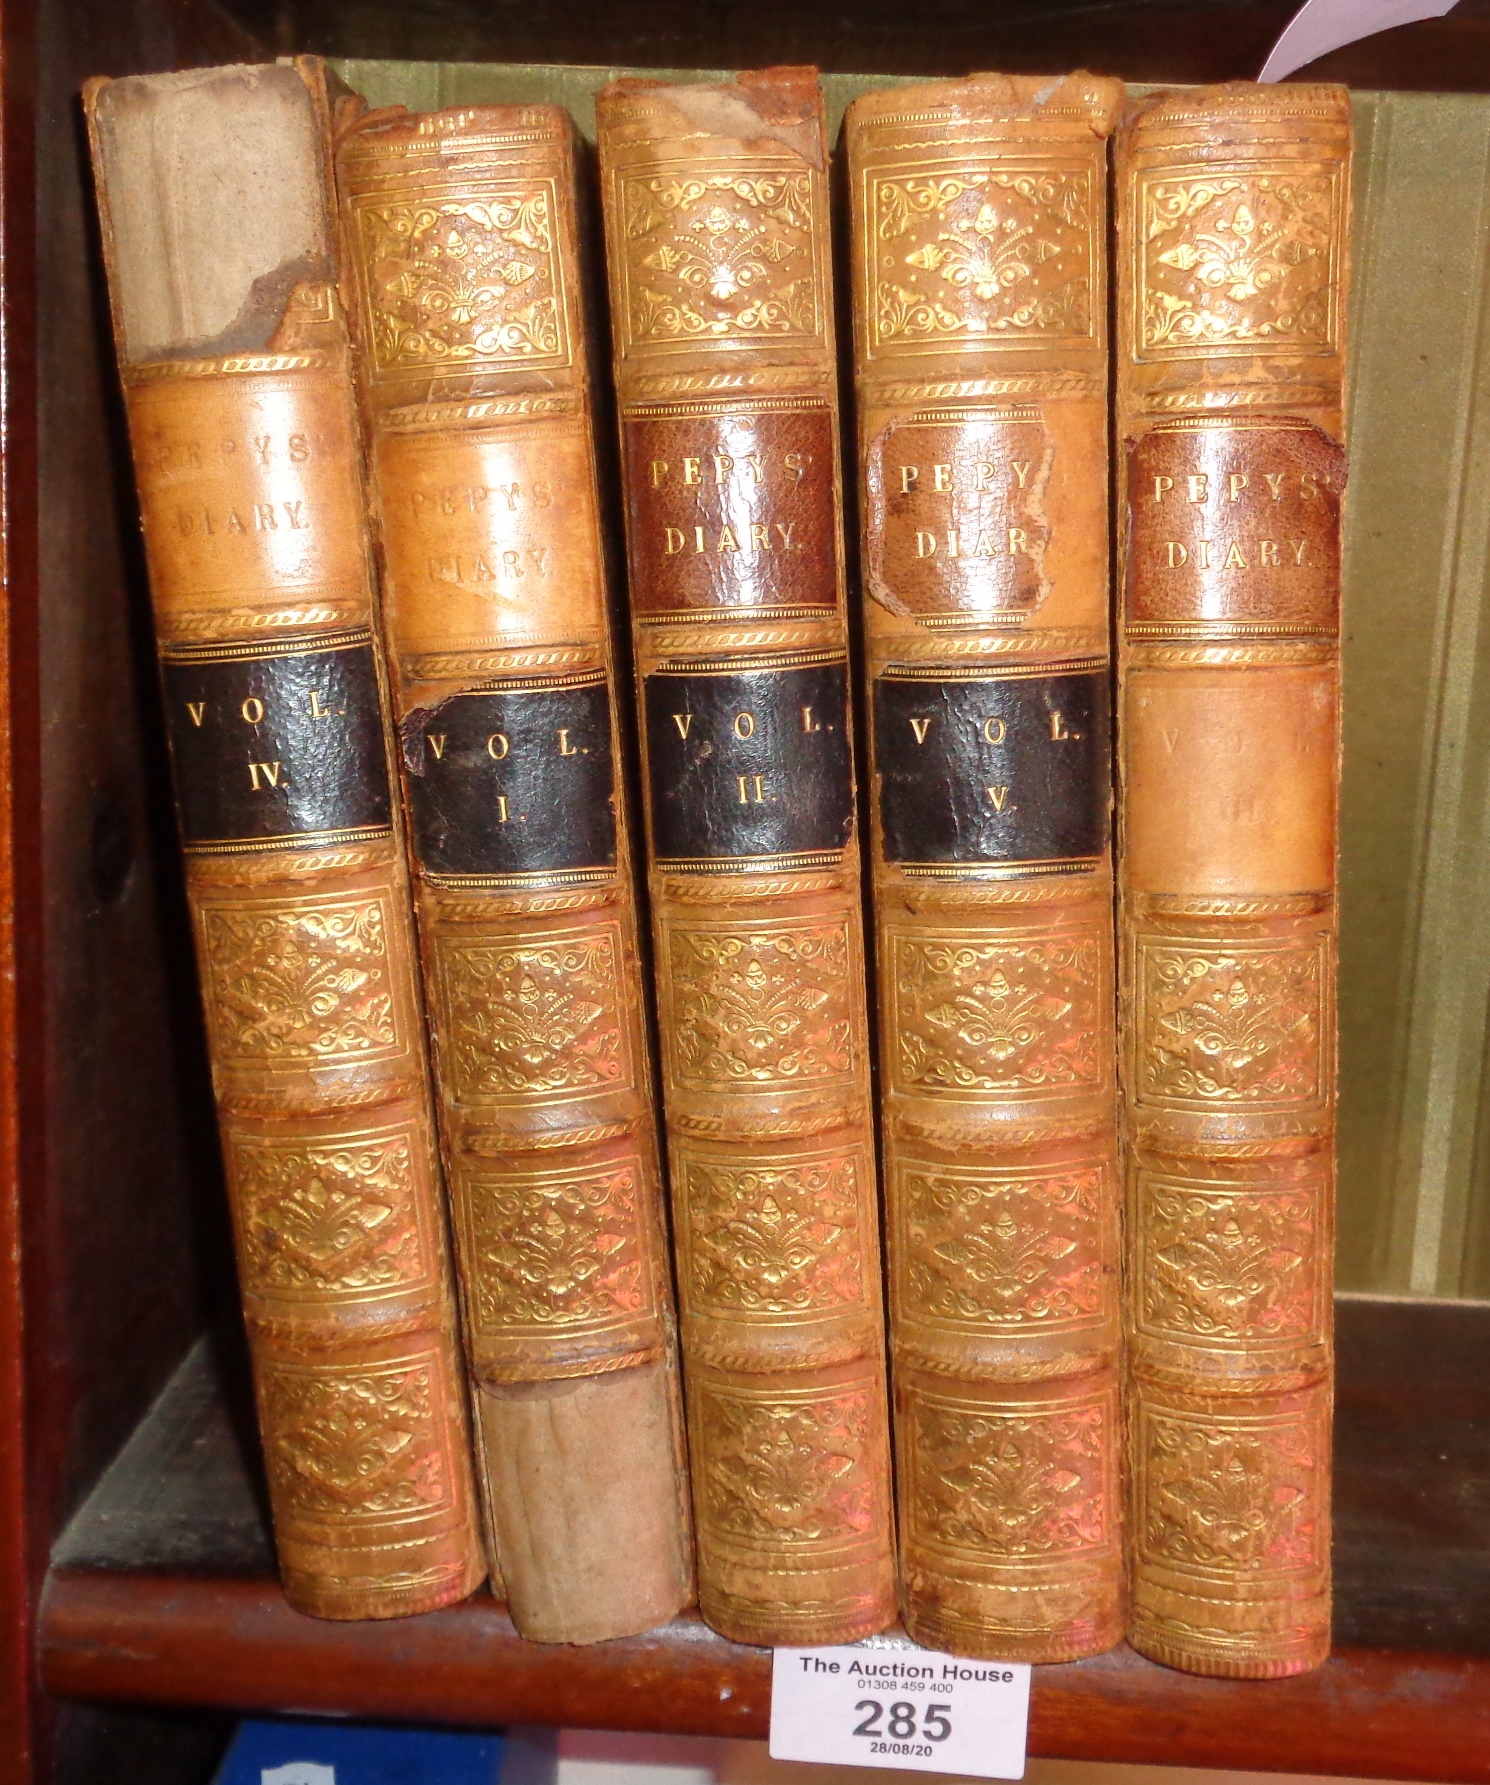 1828 5 volume (complete set) of "Samuel Pepys Memoirs"